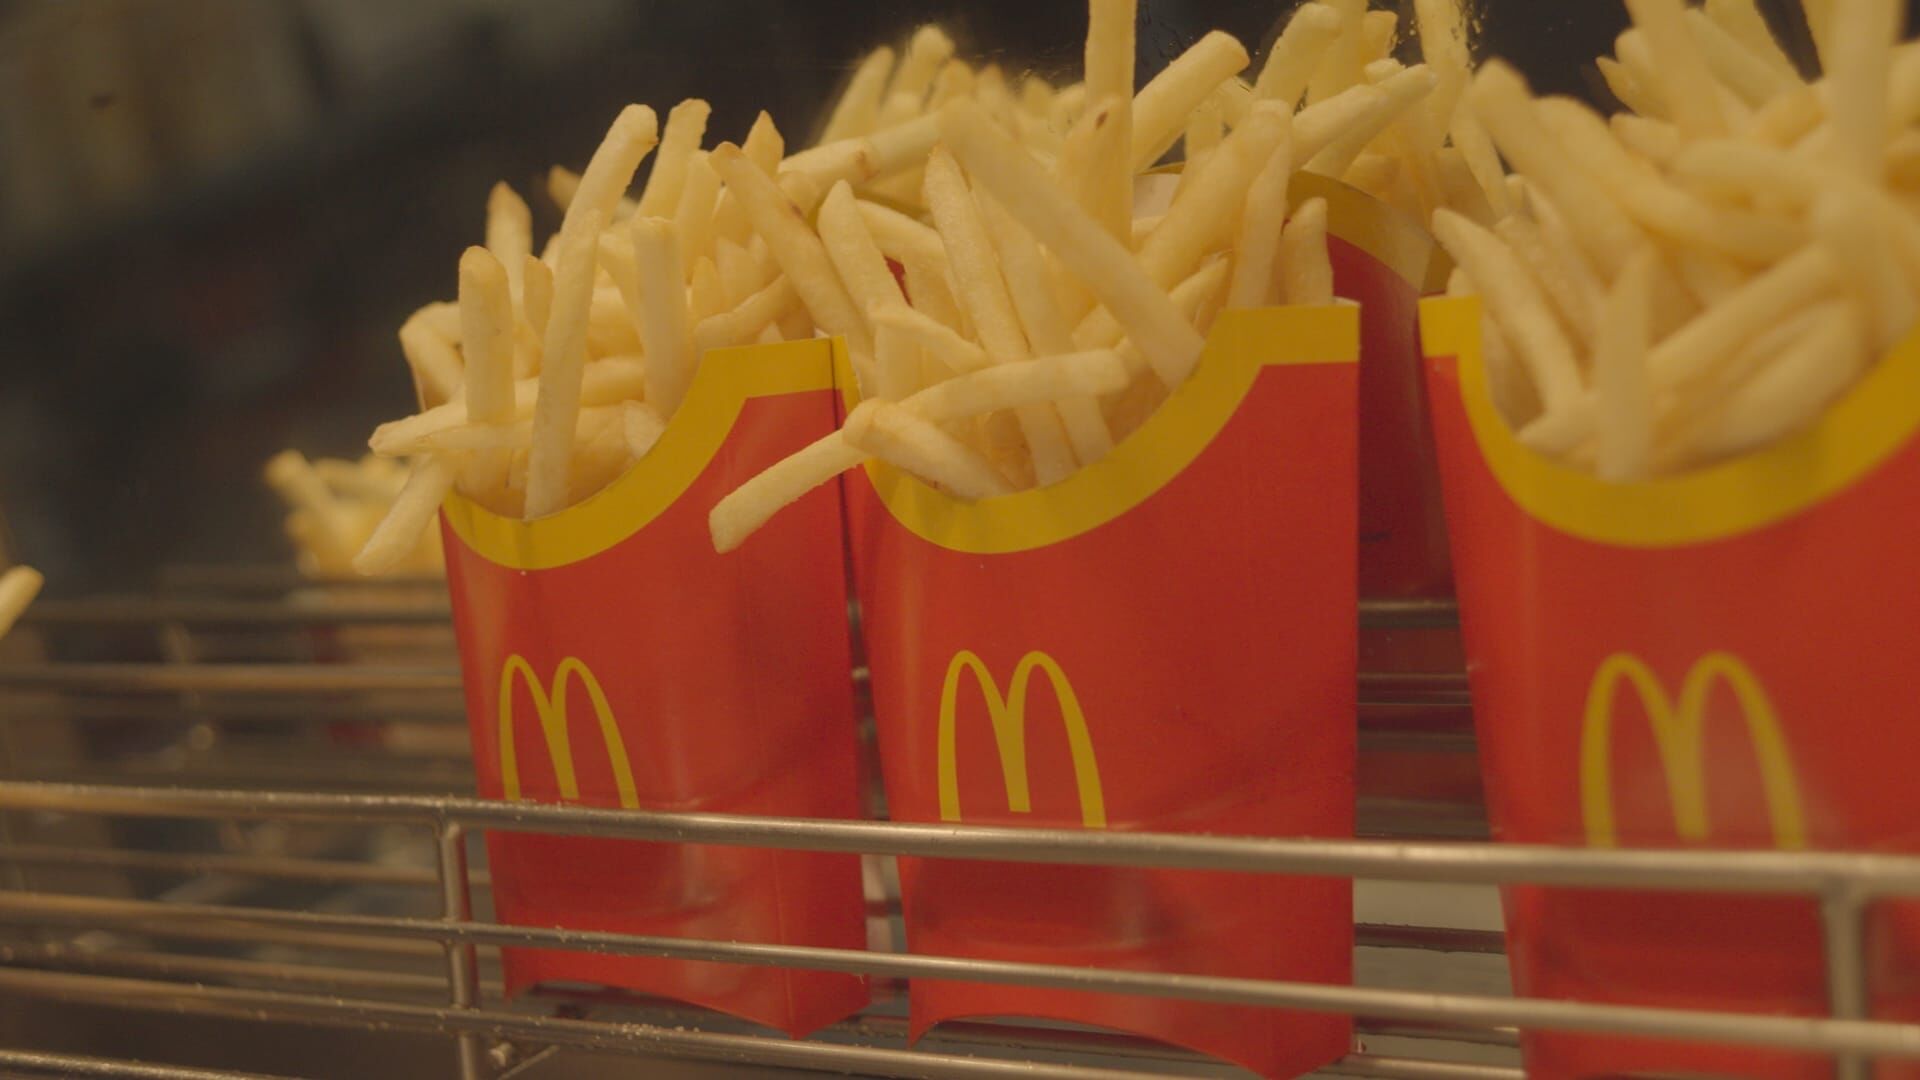 ZDFbesseresser: Der Fast-Food-Gigant – McDonald's